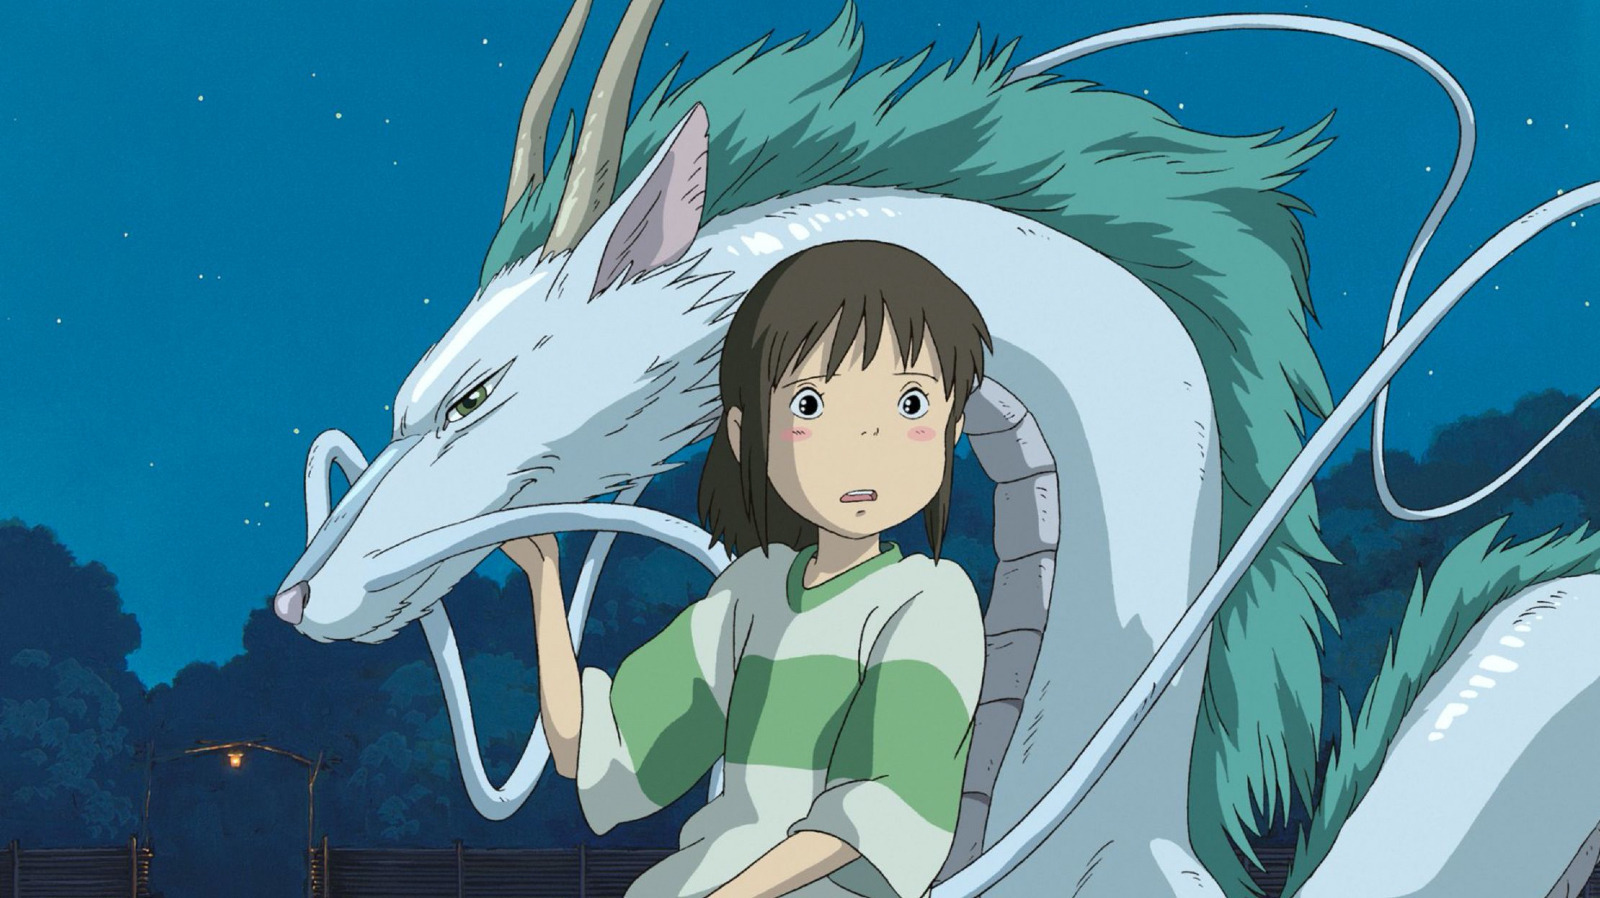 New Studio Ghibli Movie From Hayao Miyazaki Opening Summer 2023